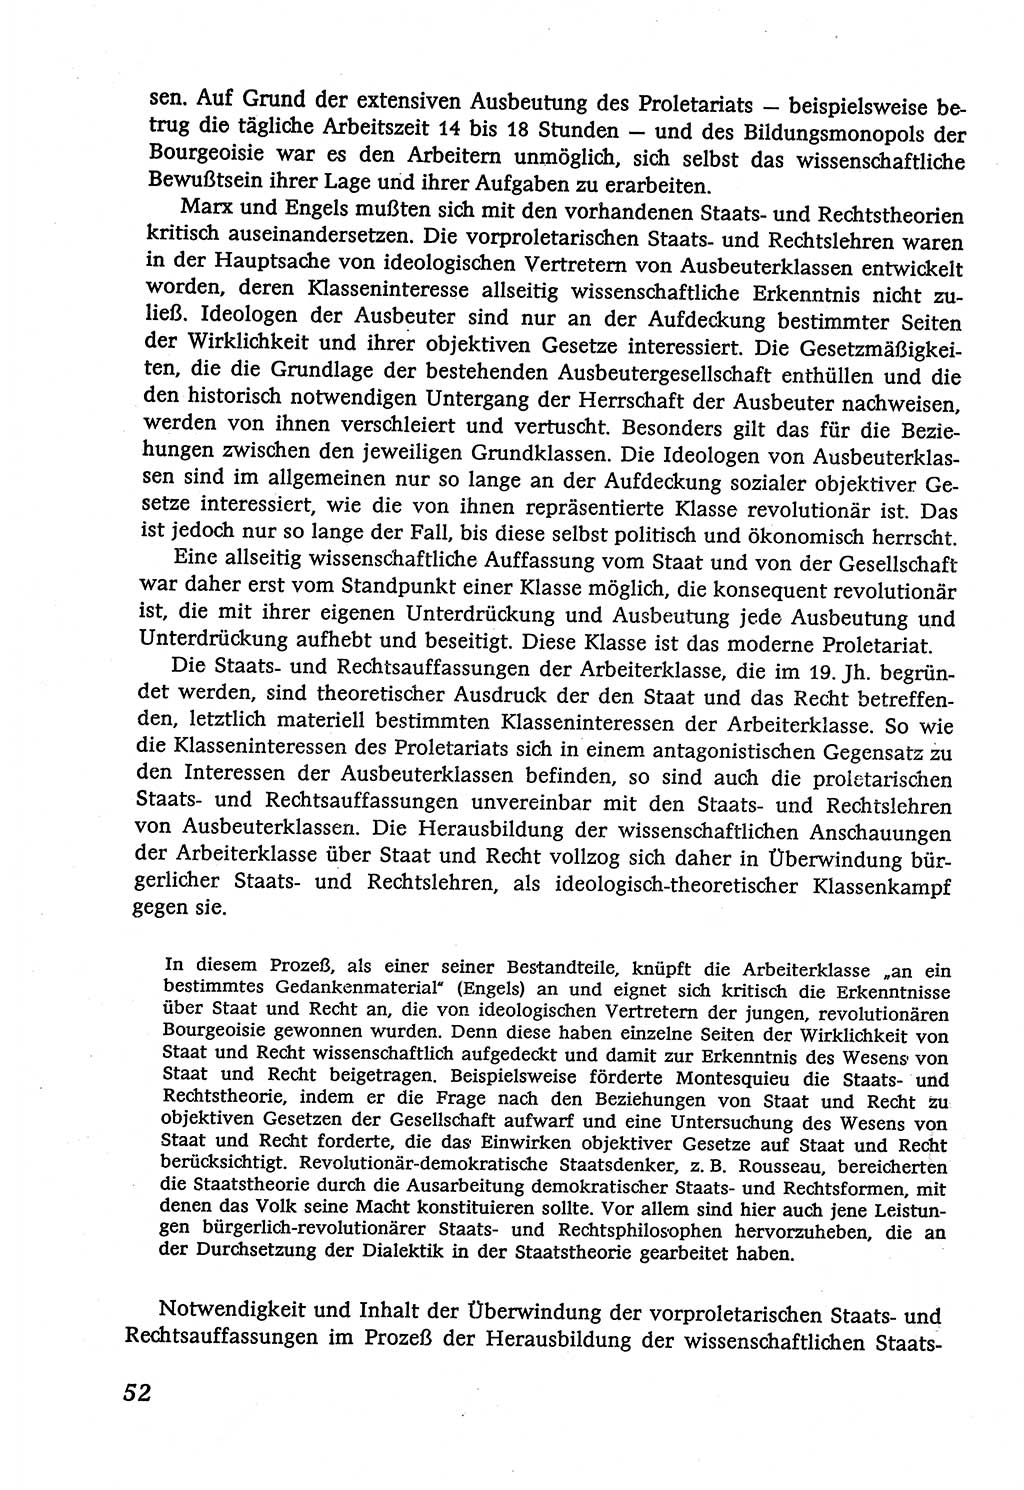 Marxistisch-leninistische (ML) Staats- und Rechtstheorie [Deutsche Demokratische Republik (DDR)], Lehrbuch 1980, Seite 52 (ML St.-R.-Th. DDR Lb. 1980, S. 52)